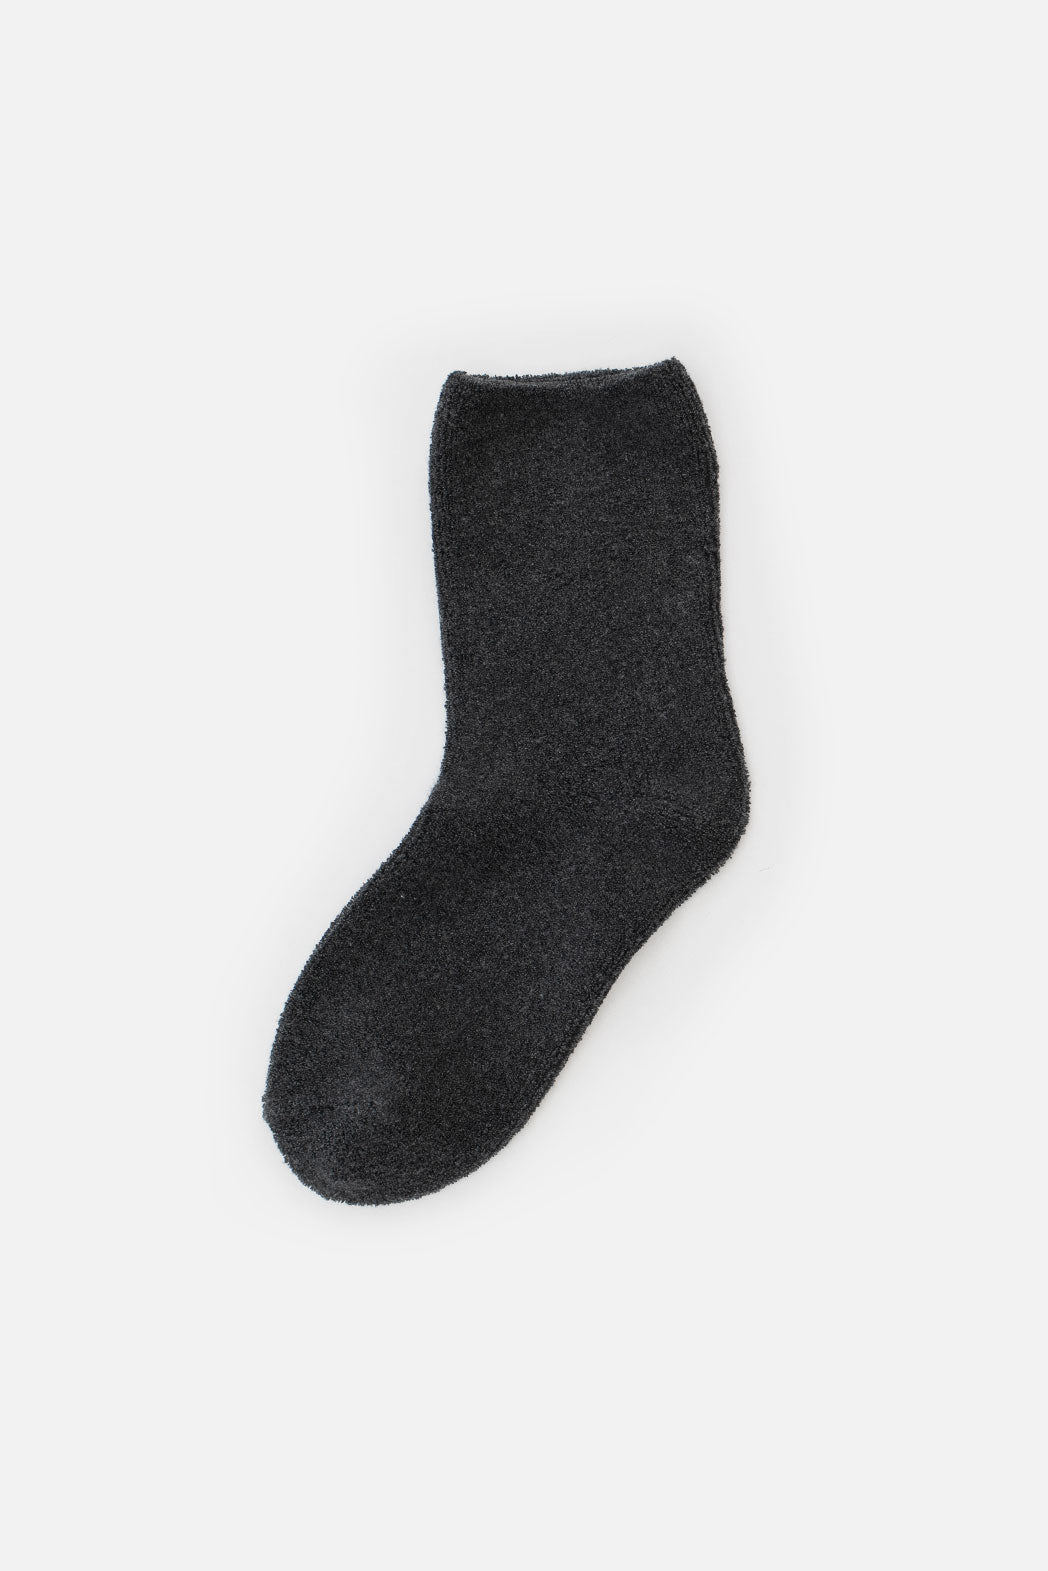 Le Bon Cloud Socks / Charcoal